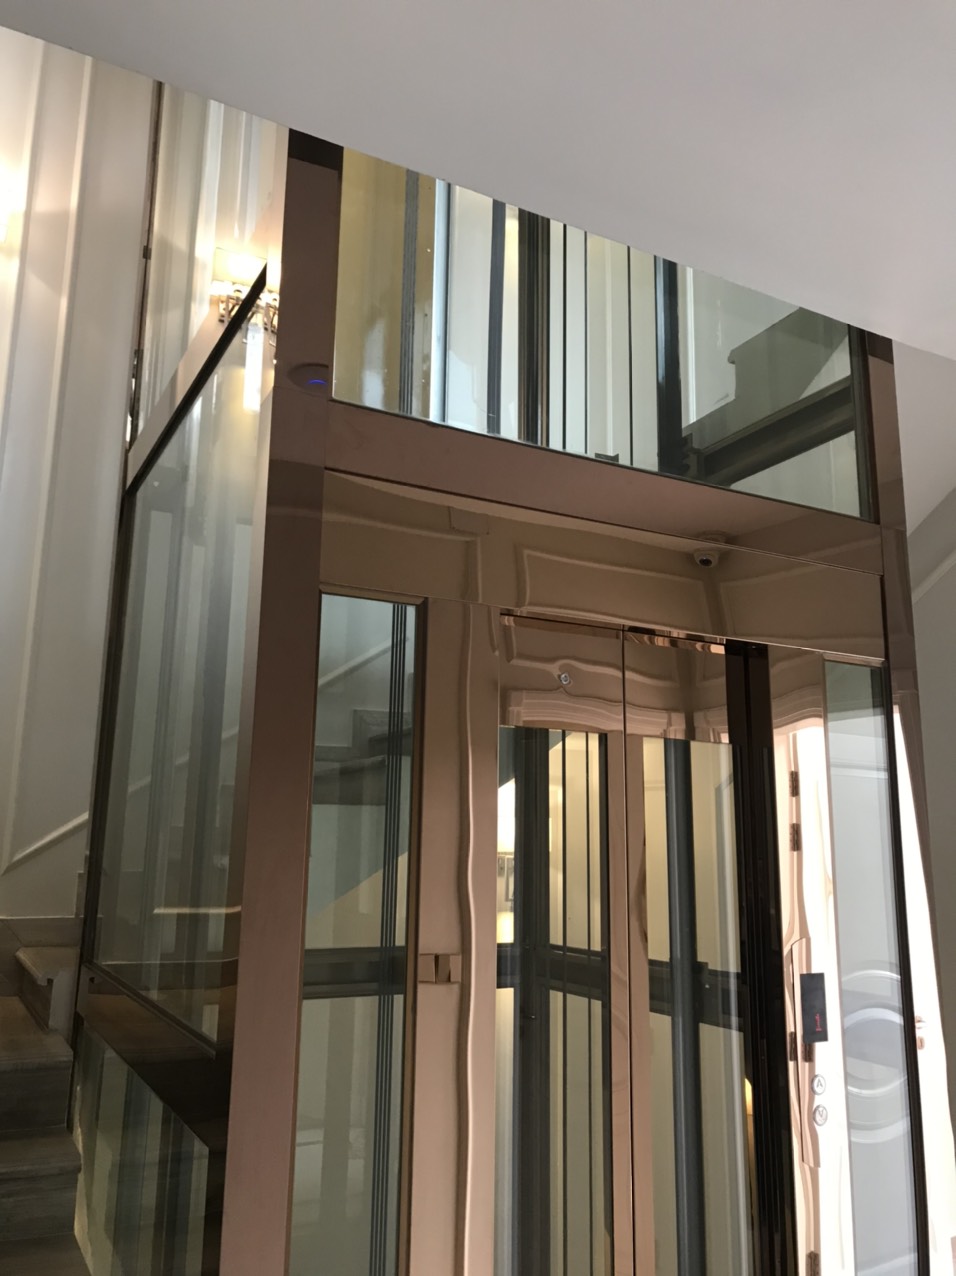 Inox thang máy là một trong những lựa chọn hàng đầu cho thi công thang máy hiện đại. Với chất liệu bền vững và độ bóng sang trọng, inox thang máy sẽ mang đến vẻ đẹp hoàn mỹ cho công trình của bạn. Hãy xem hình ảnh để thưởng thức vẻ đẹp của inox thang máy!